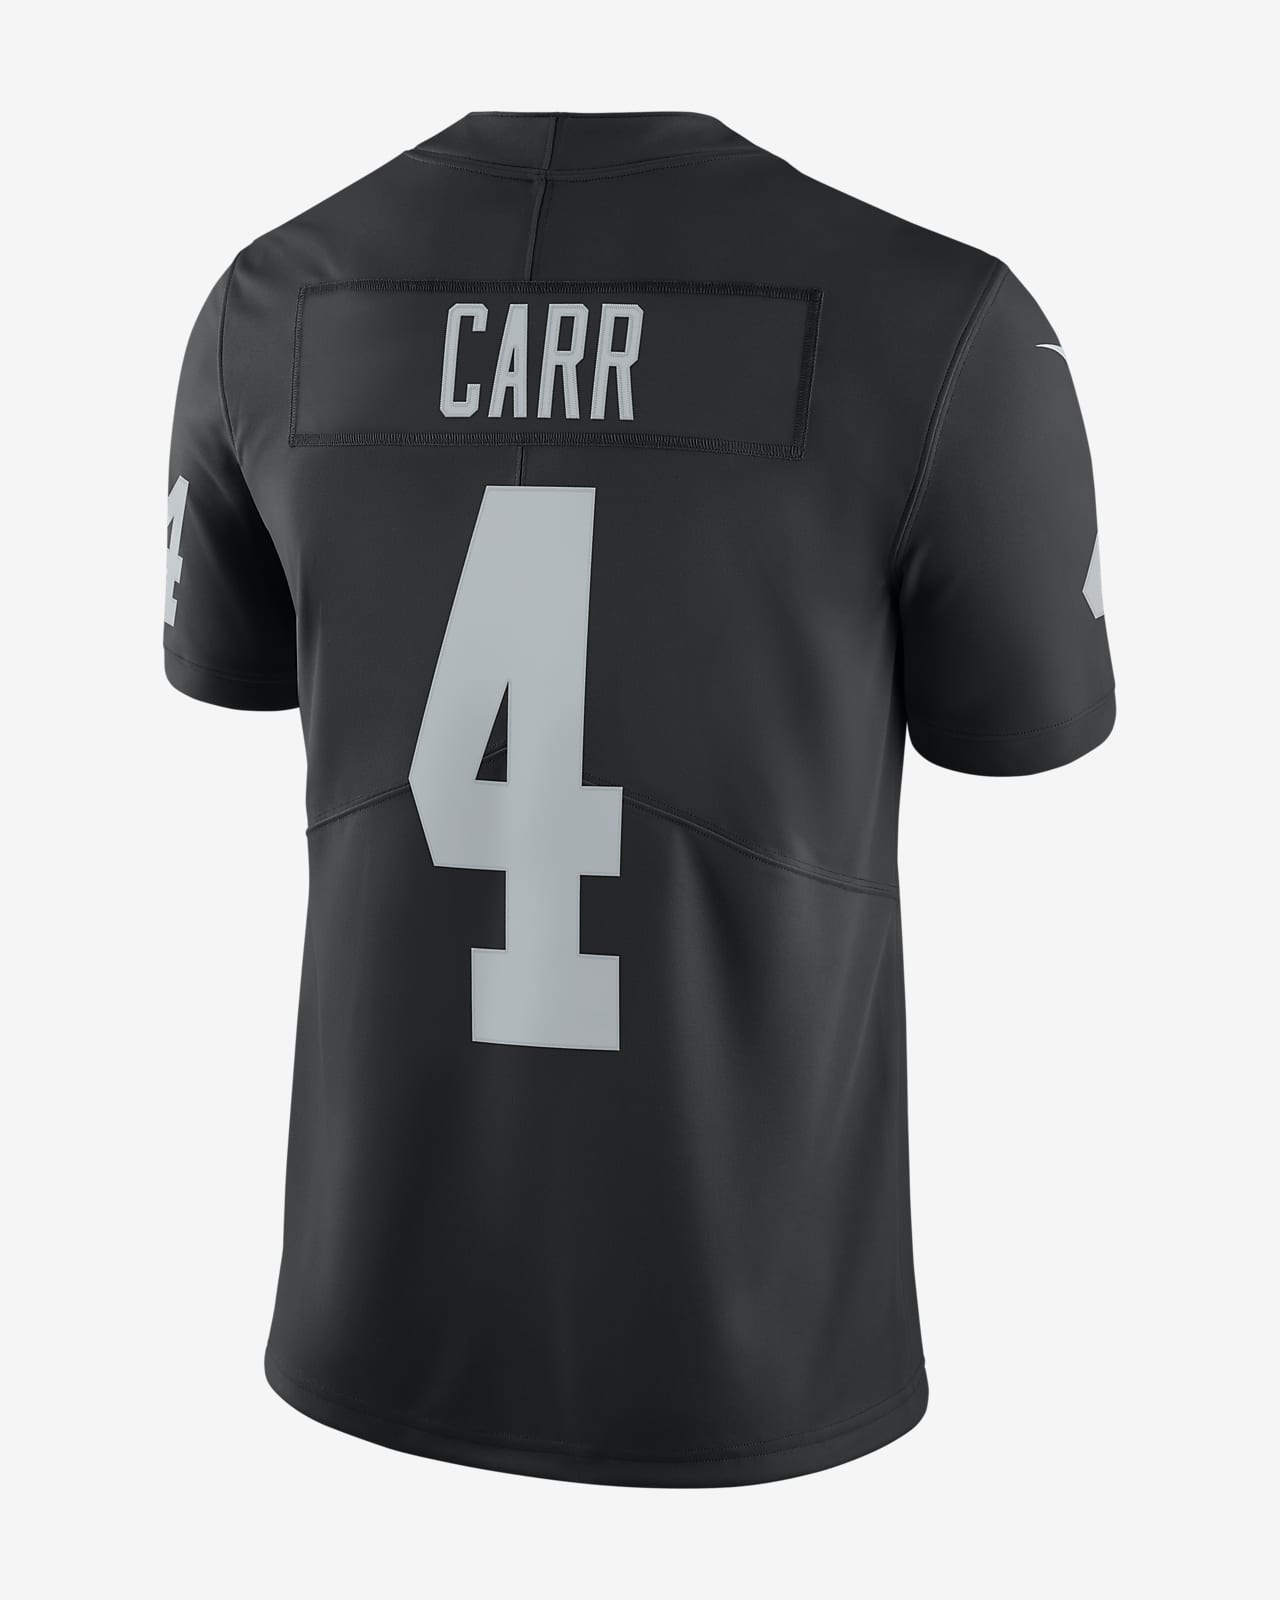 NFL Las Vegas Raiders Vapor Untouchable (Derek Carr) Men's Limited Football Jersey